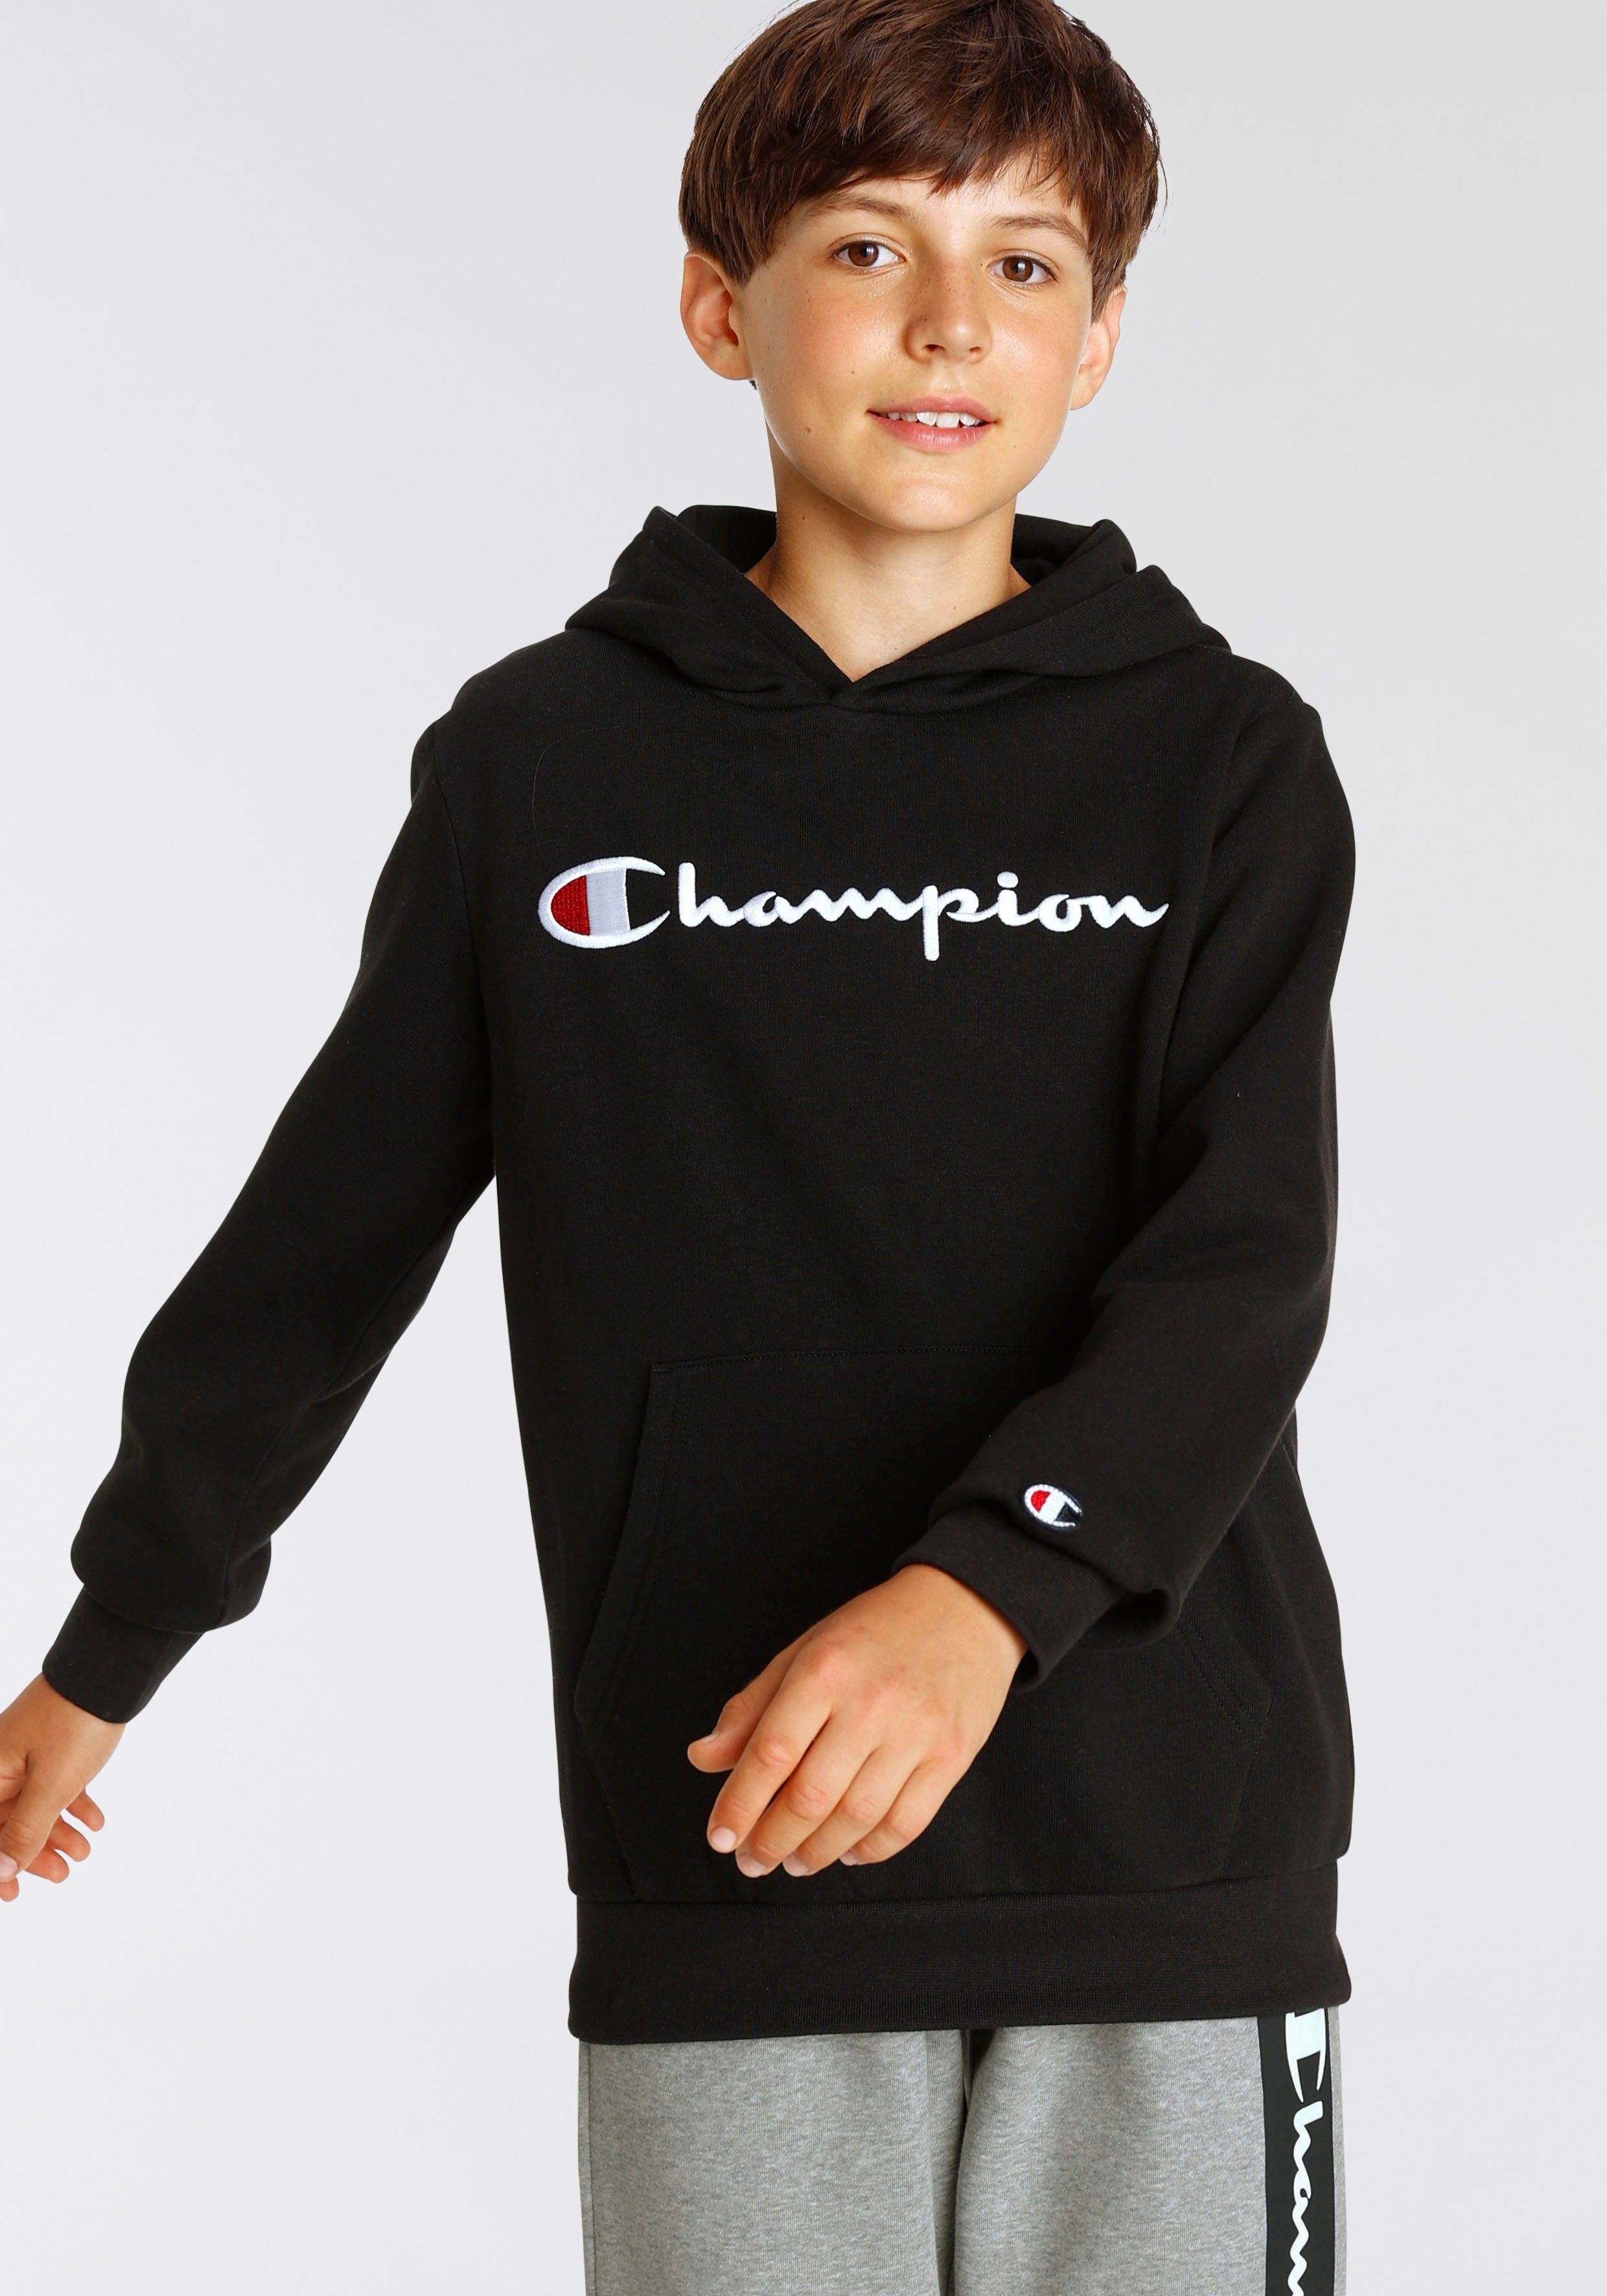 Logo Sweatshirt Classic - Kinder large schwarz Sweatshirt für Hooded Champion